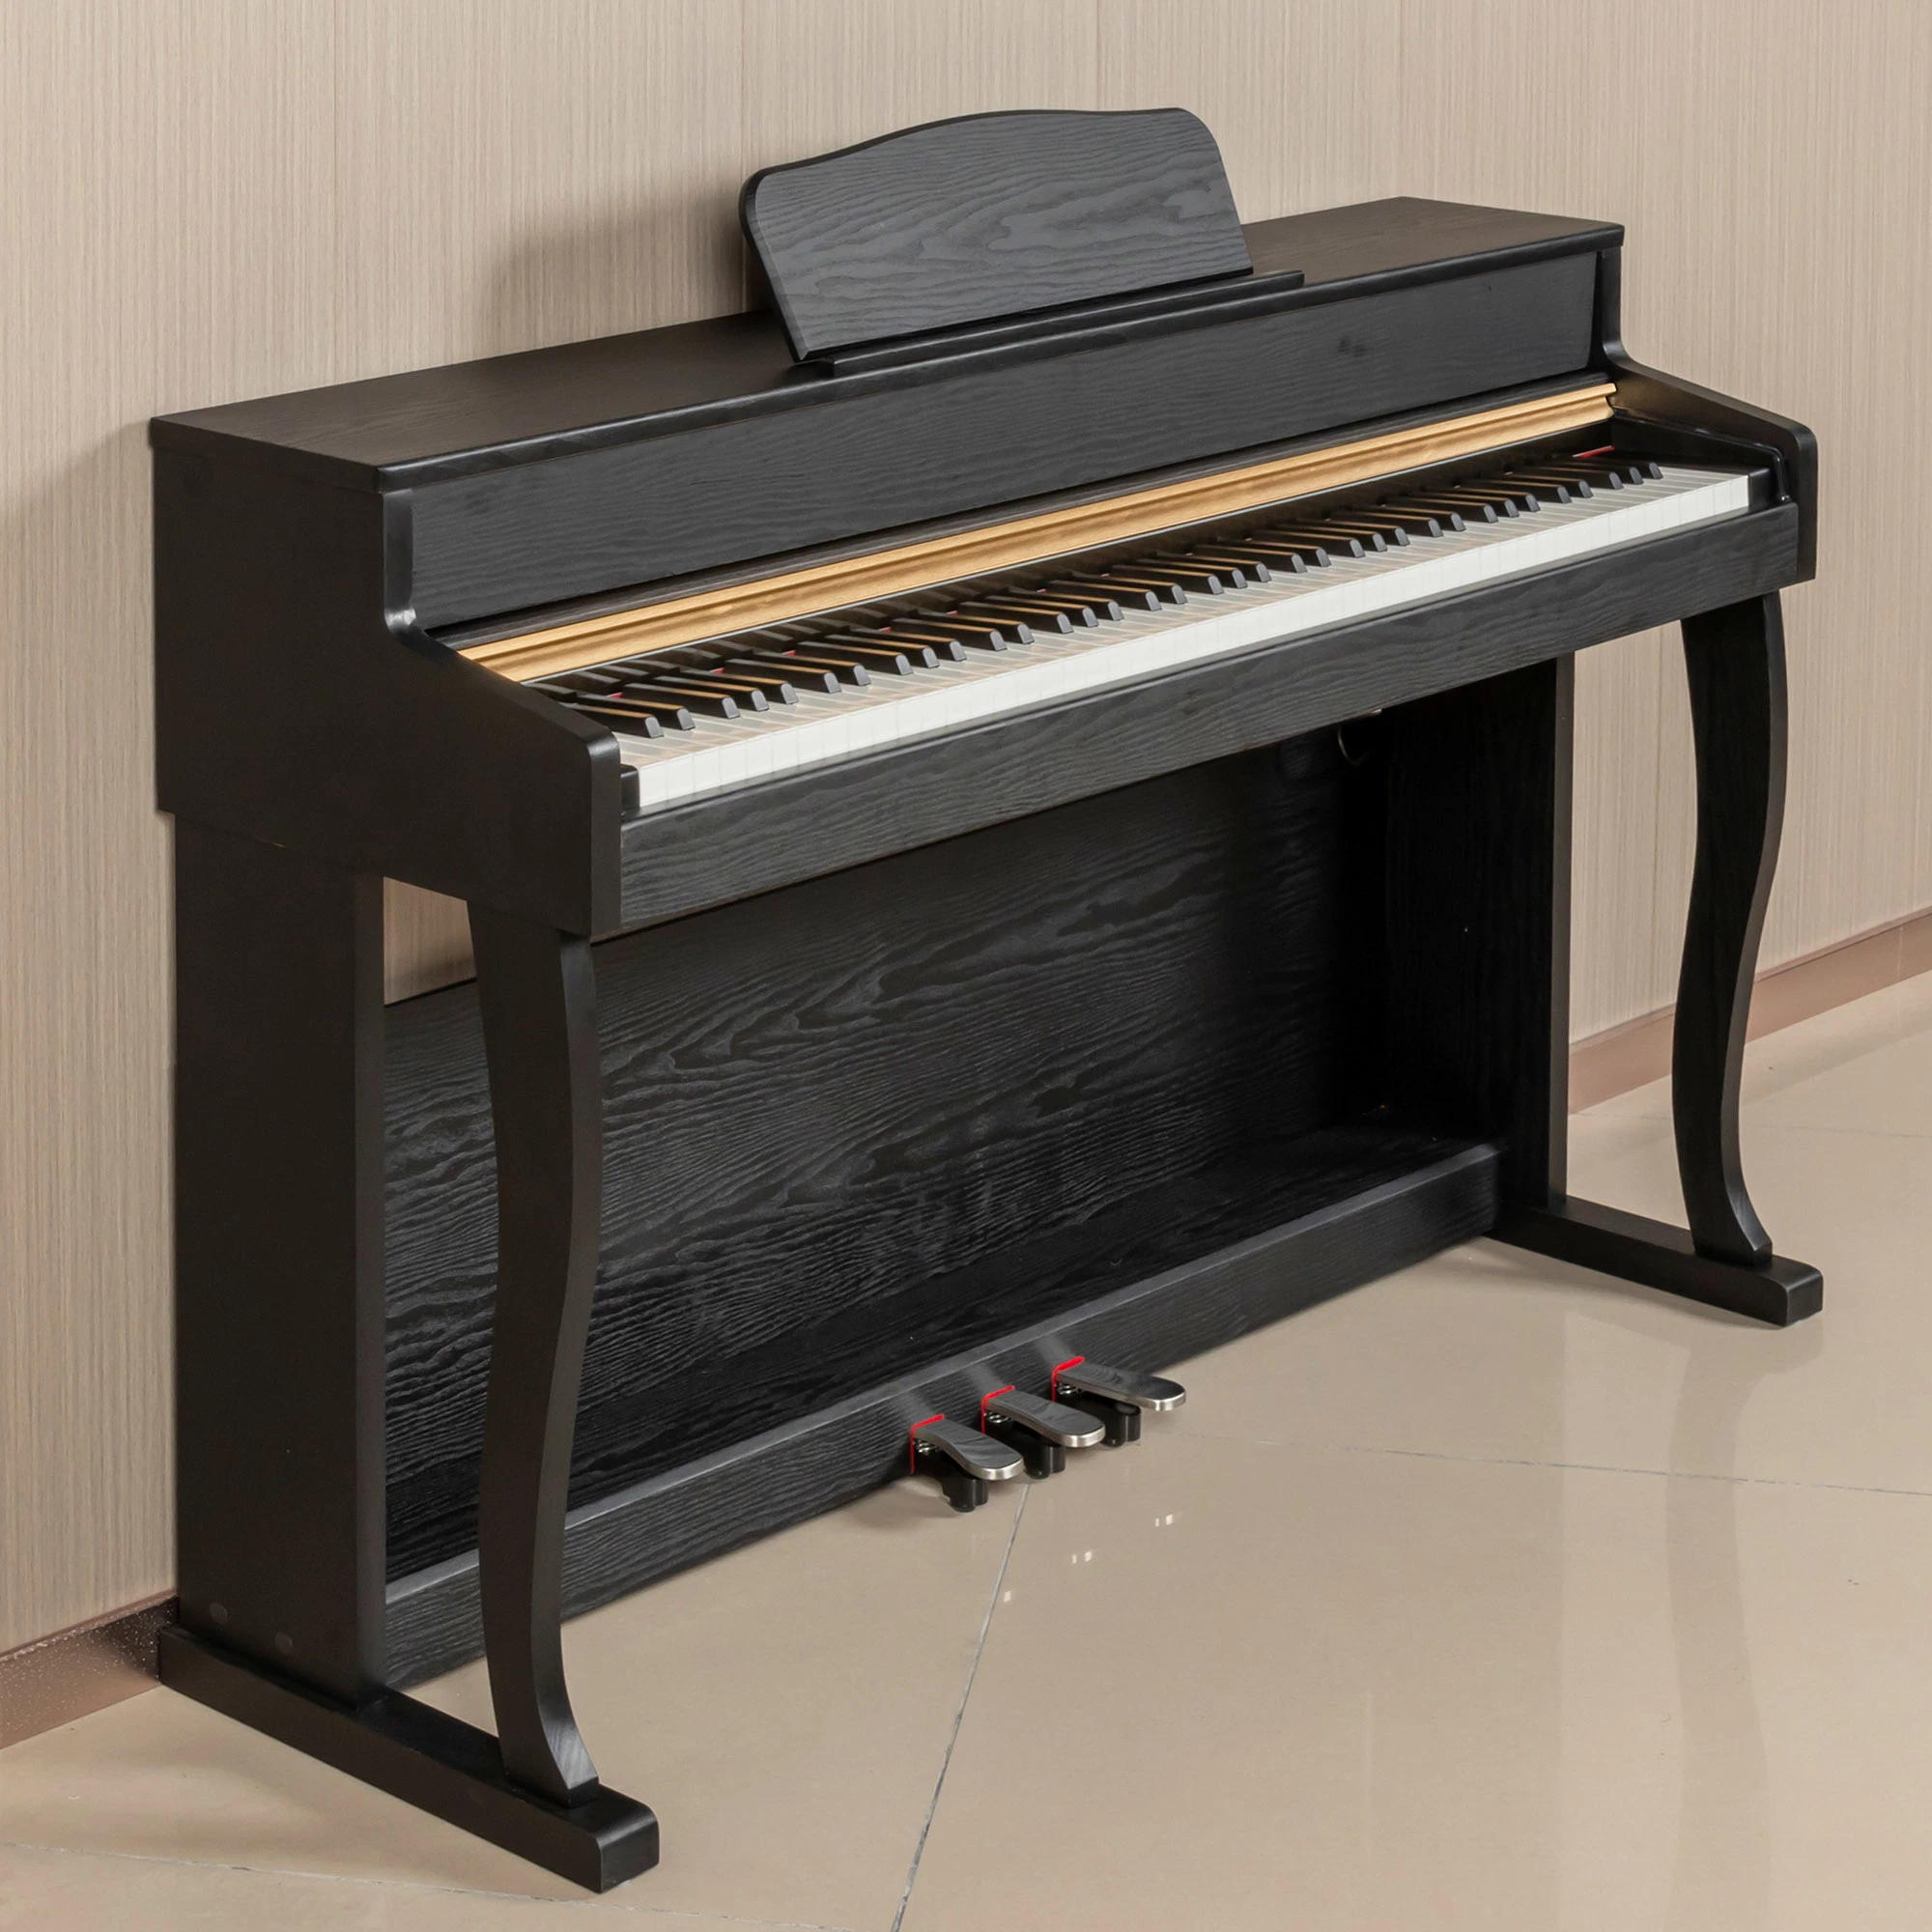 لوحة مفاتيح احترافية بيانو كهربائي 88 لوحة مفاتيح بيانو احترافية أساسية 88 مفتاحا، ديود رقمي